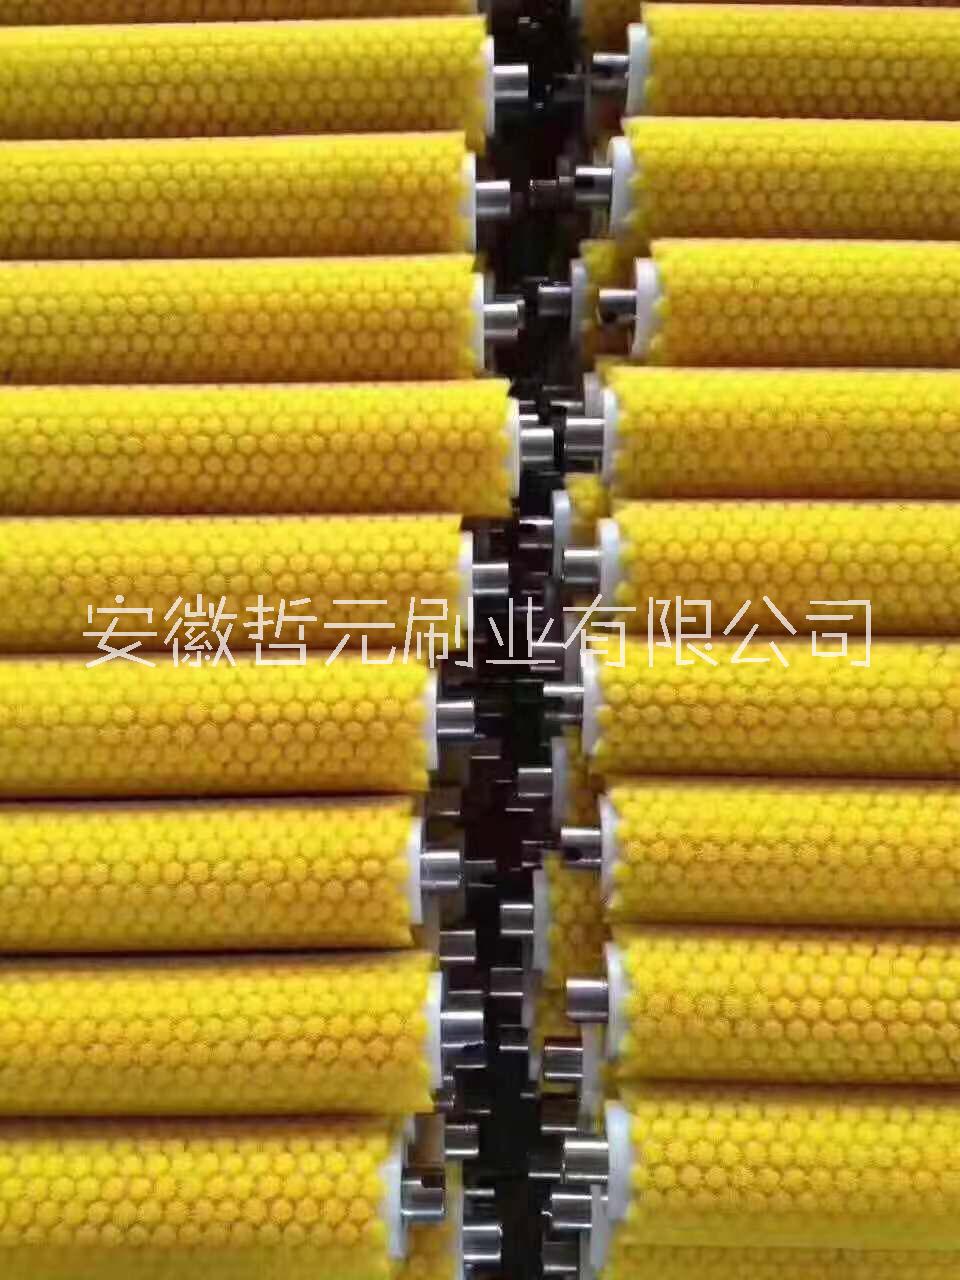 安庆市果蔬清洗毛刷辊厂家 长期批发毛刷辊 清洗毛刷辊价格图片